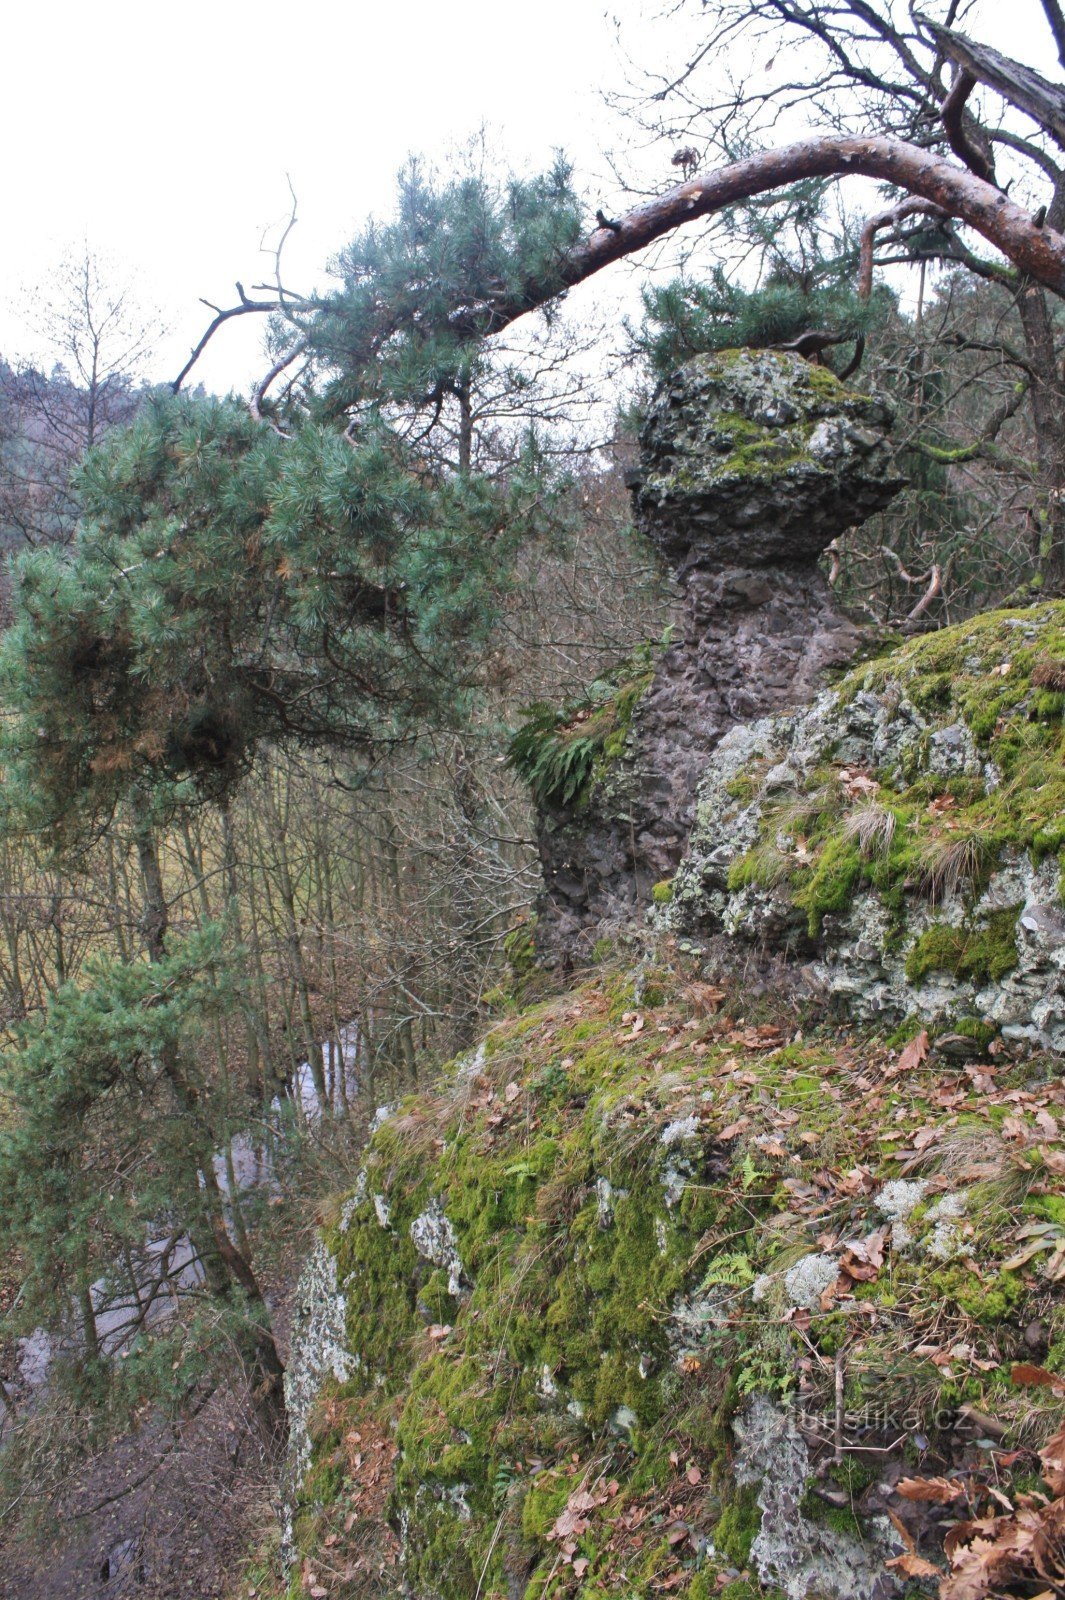 Krkatá baba nằm trên đỉnh những tảng đá phía trên dòng suối Lubě